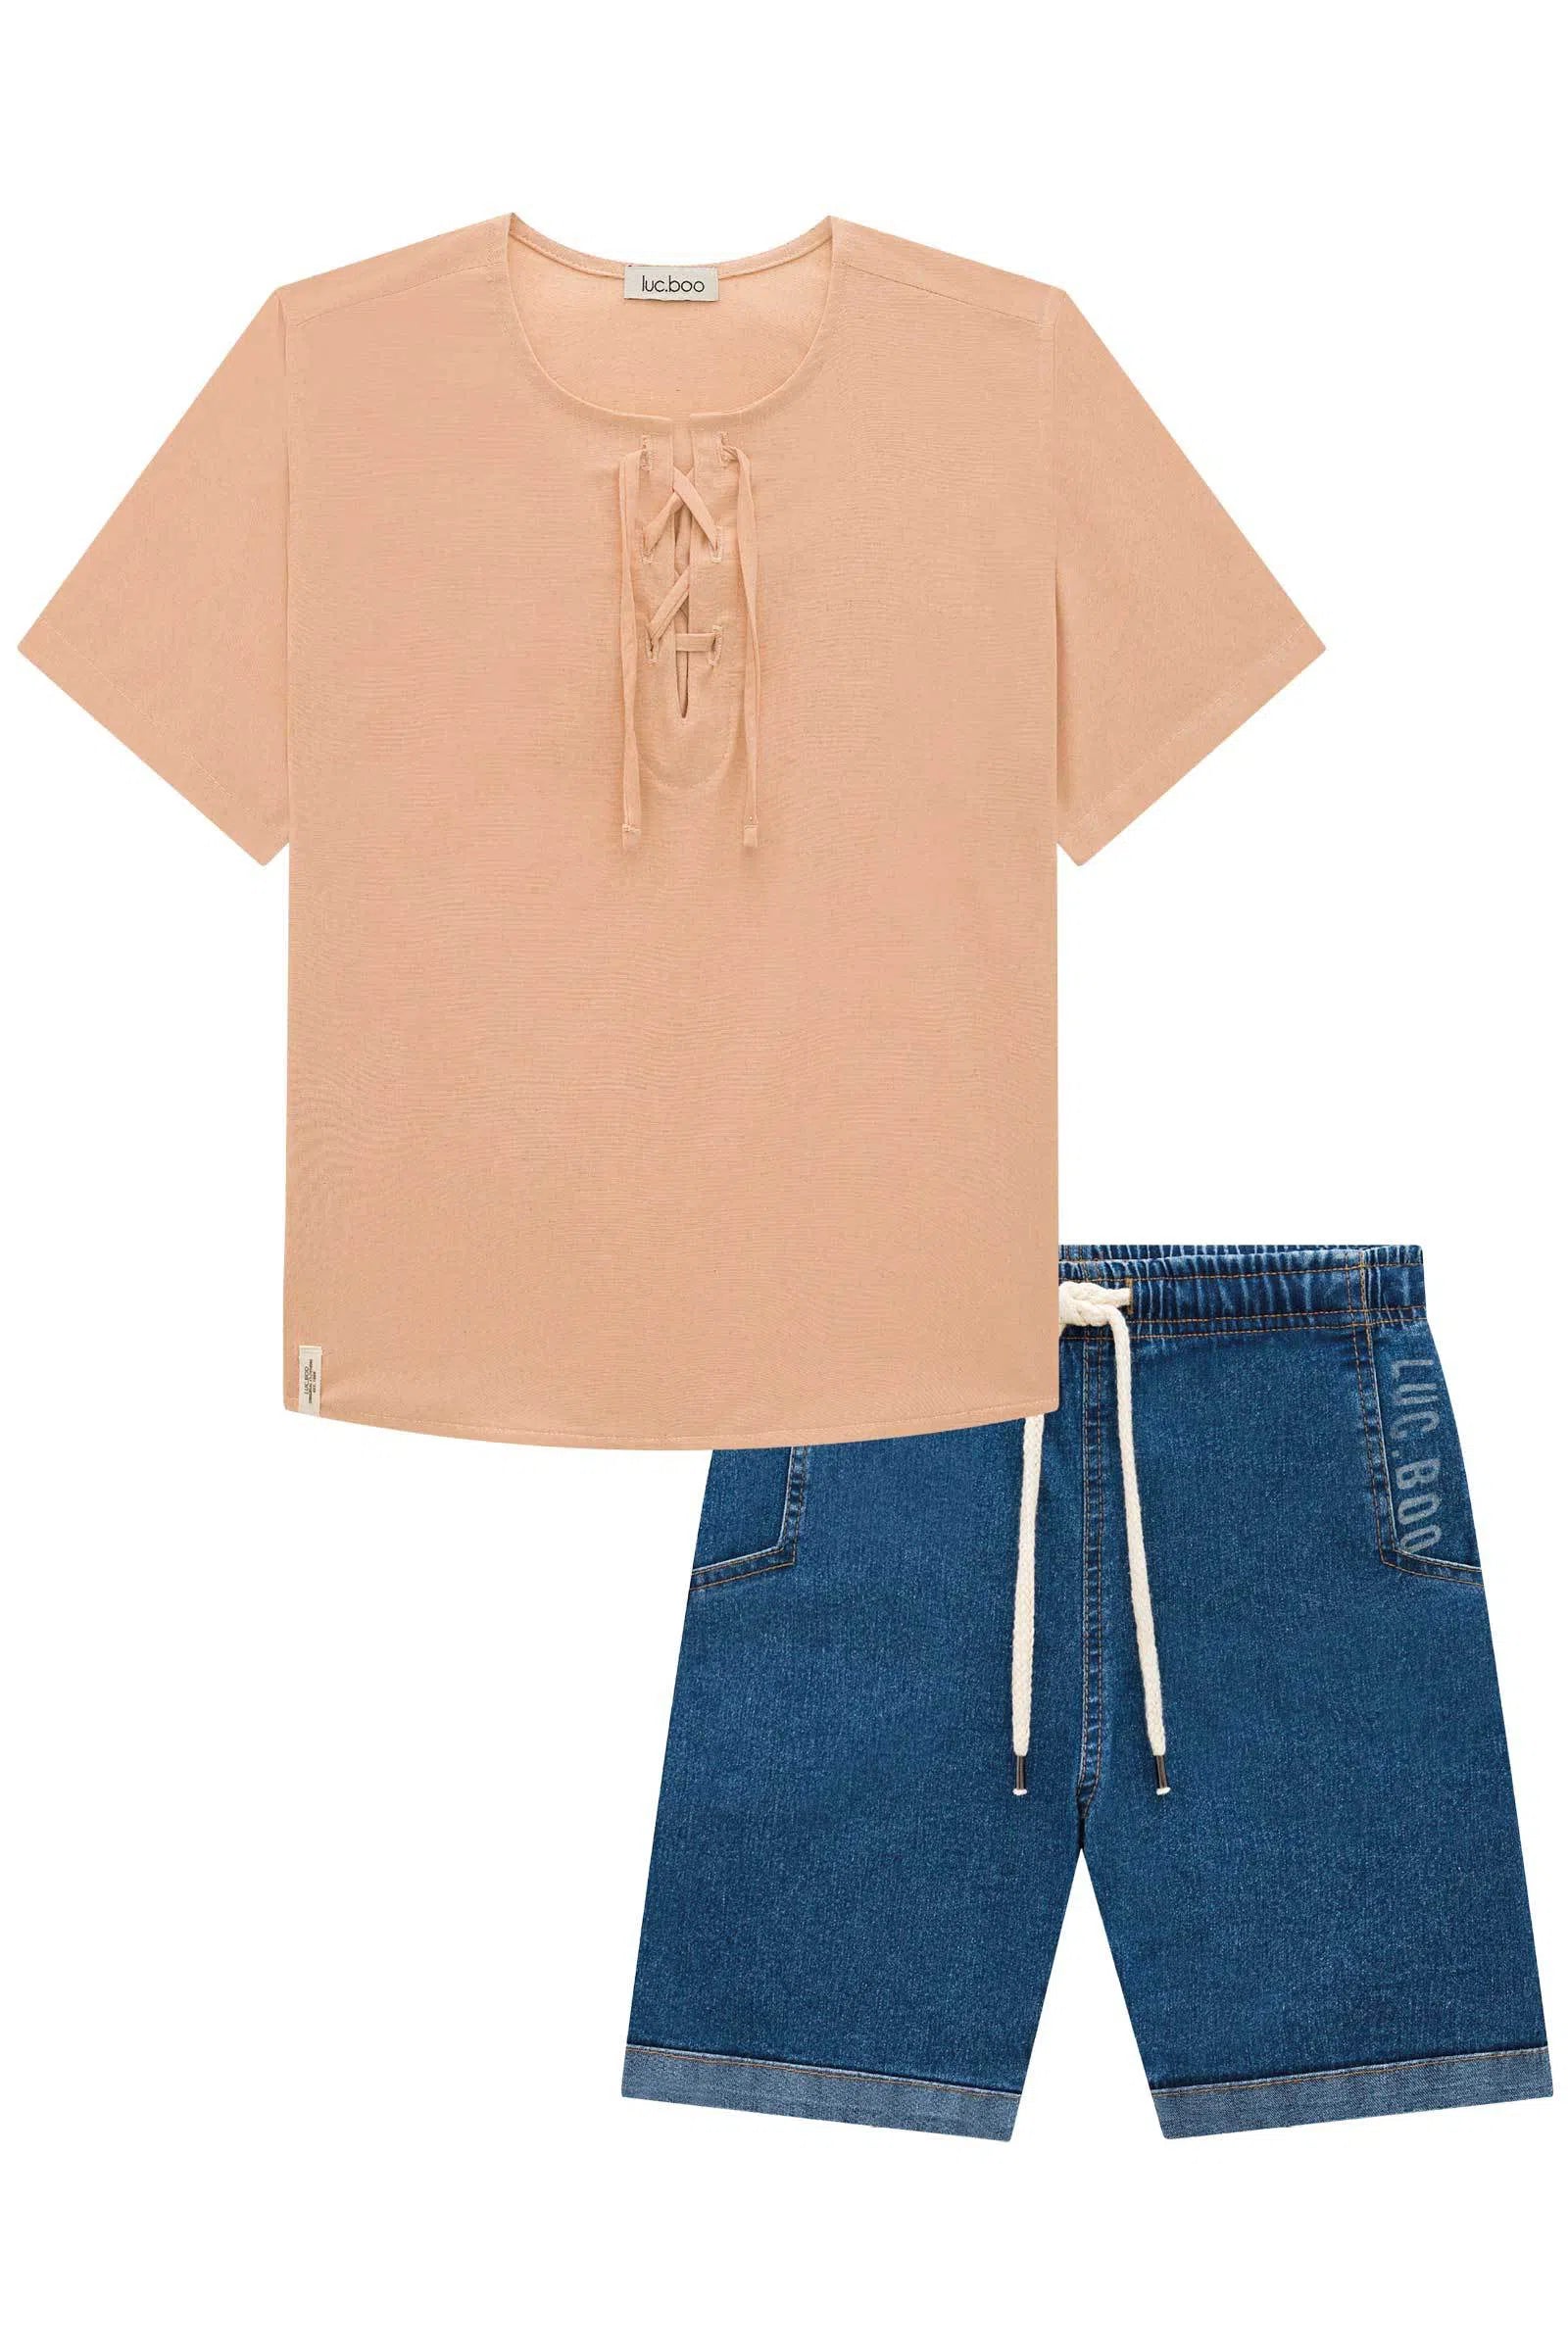 Conjunto de Camisa em Linho Delux e Bermuda em Jeans Bellini com Elastano 72573 LucBoo